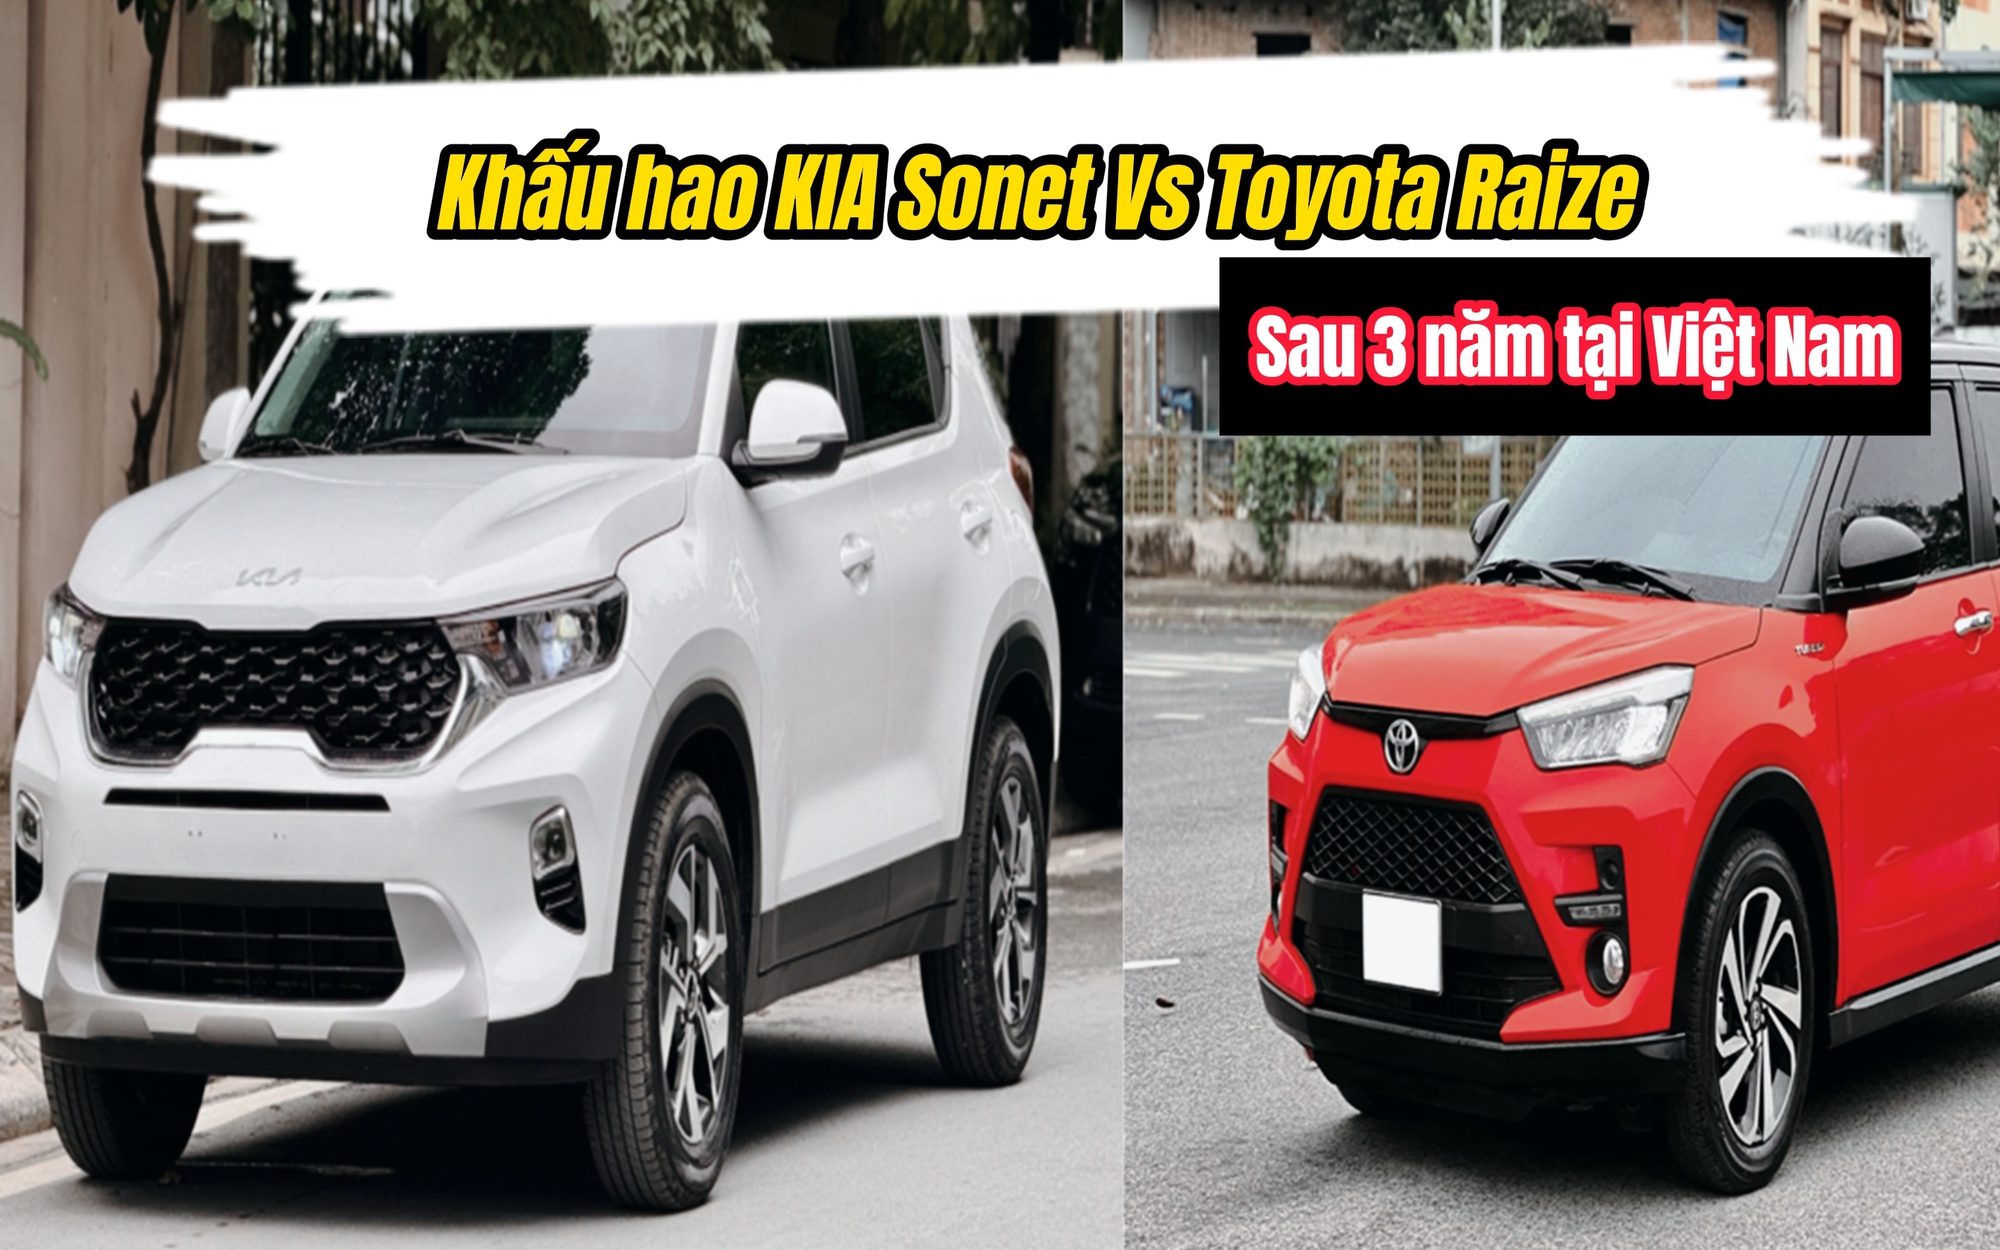 Ngỡ ngàng khấu hao KIA Sonet và Toyota Raize sau 3 năm tại Việt Nam